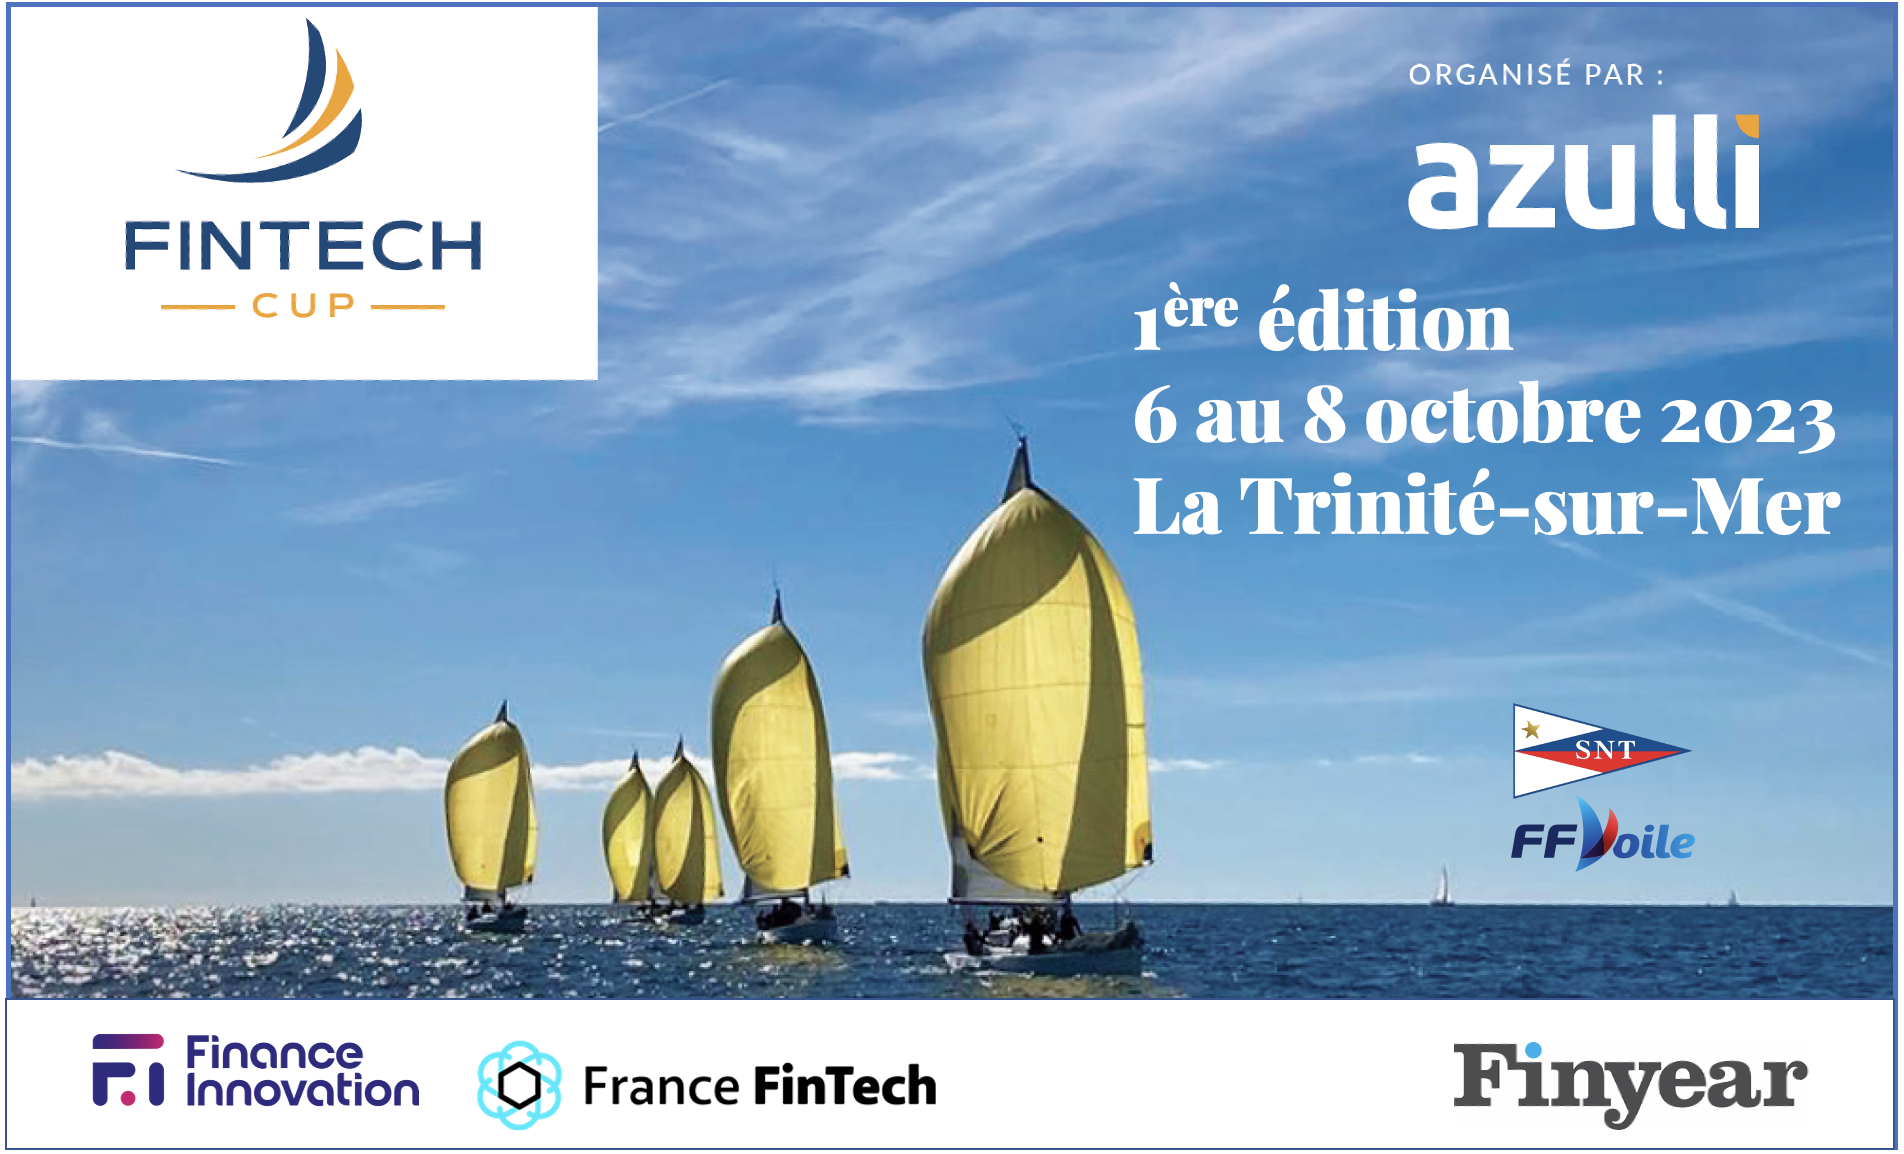 Fintech Cup, la régate des fintechs européennes : coup d'envoi ce 6 octobre 